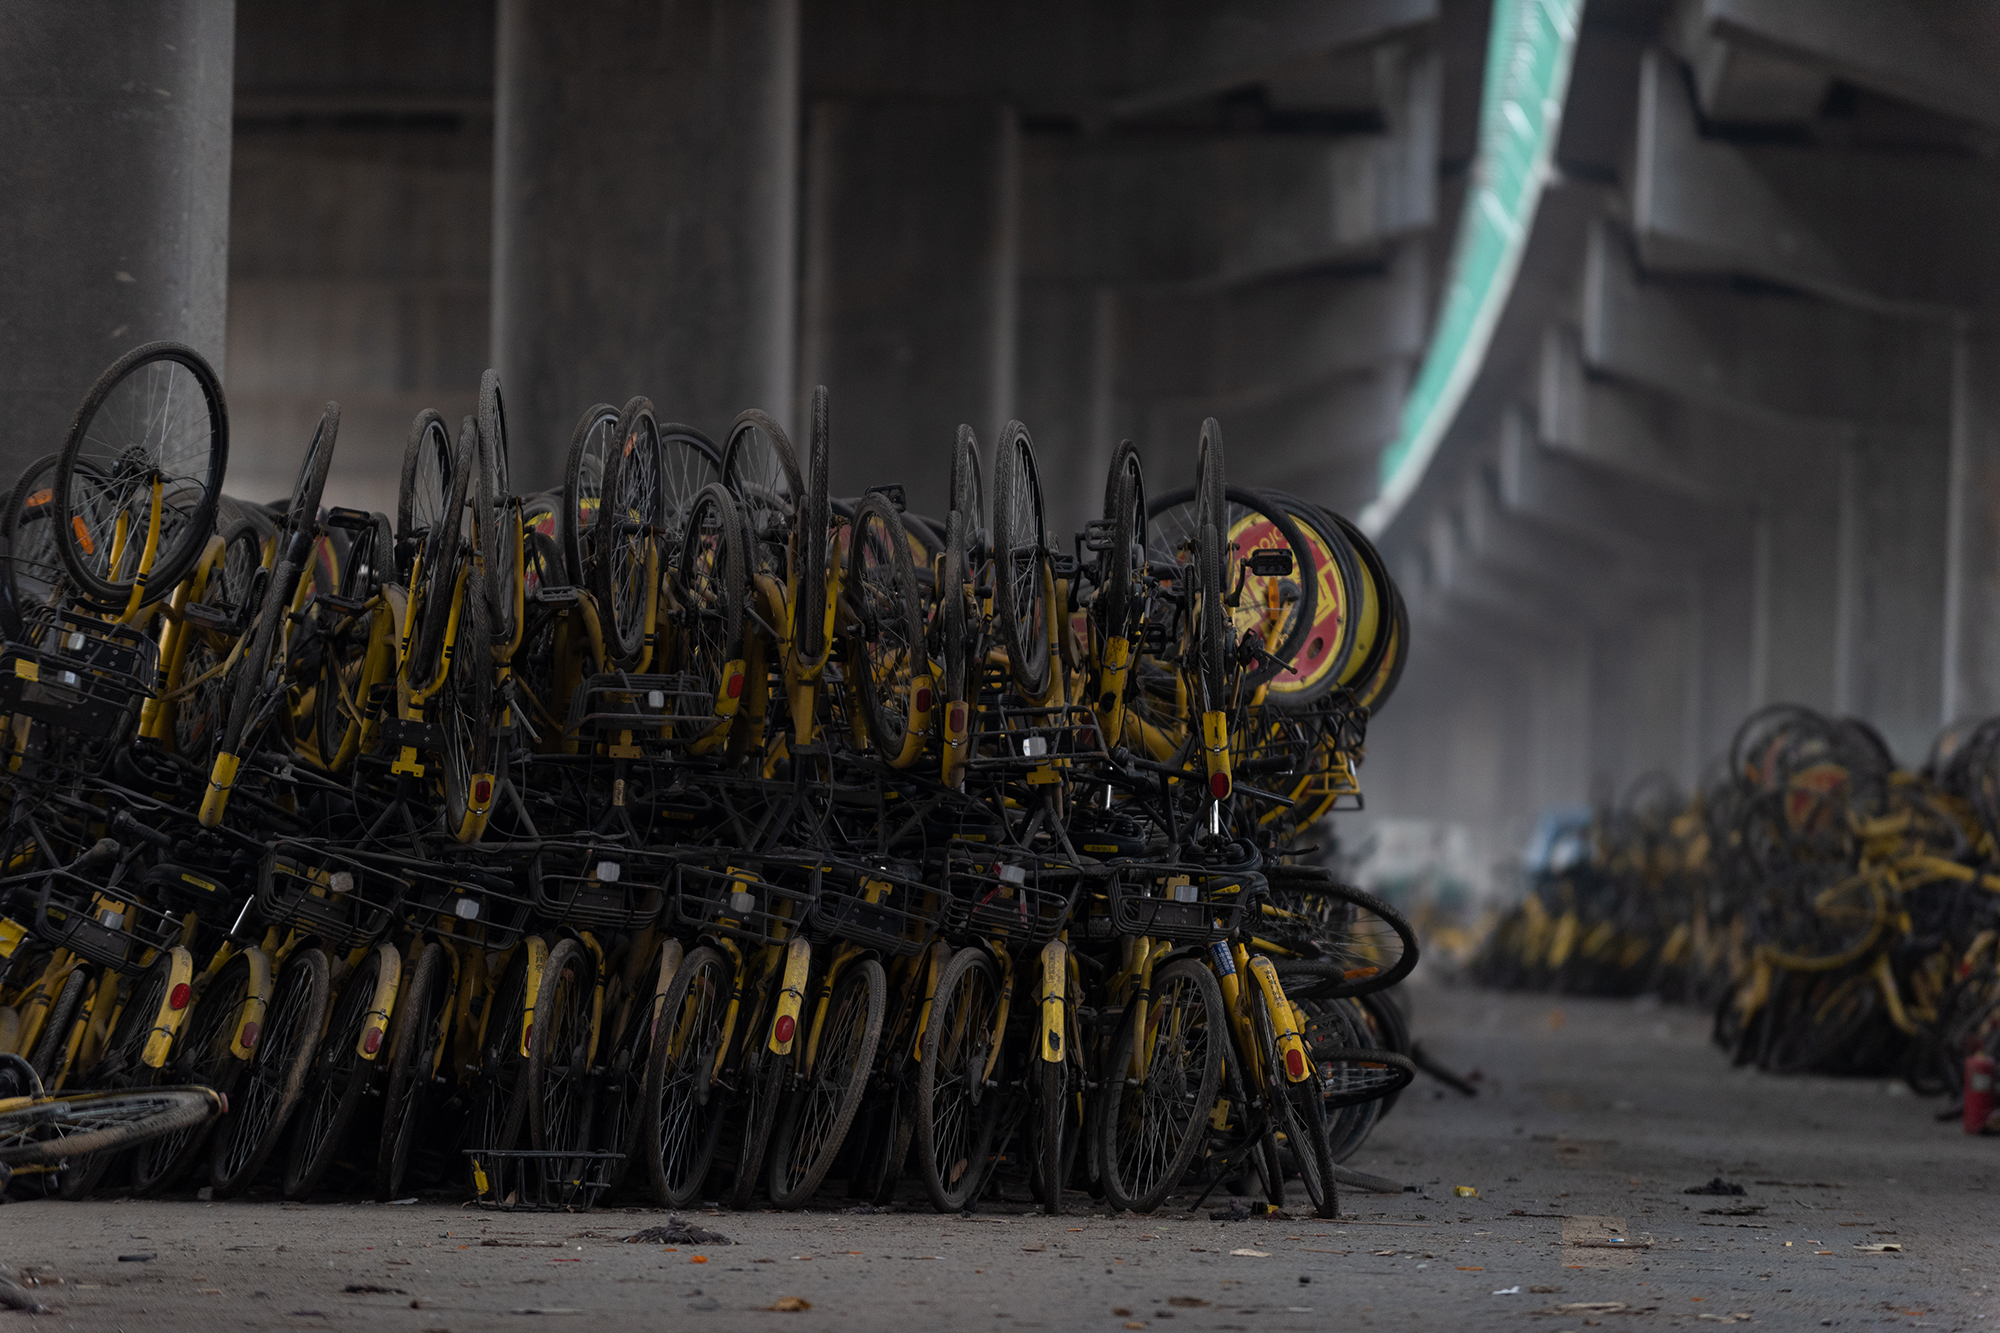 西安现共享单车"坟场",数万辆废旧小黄车堆积如山